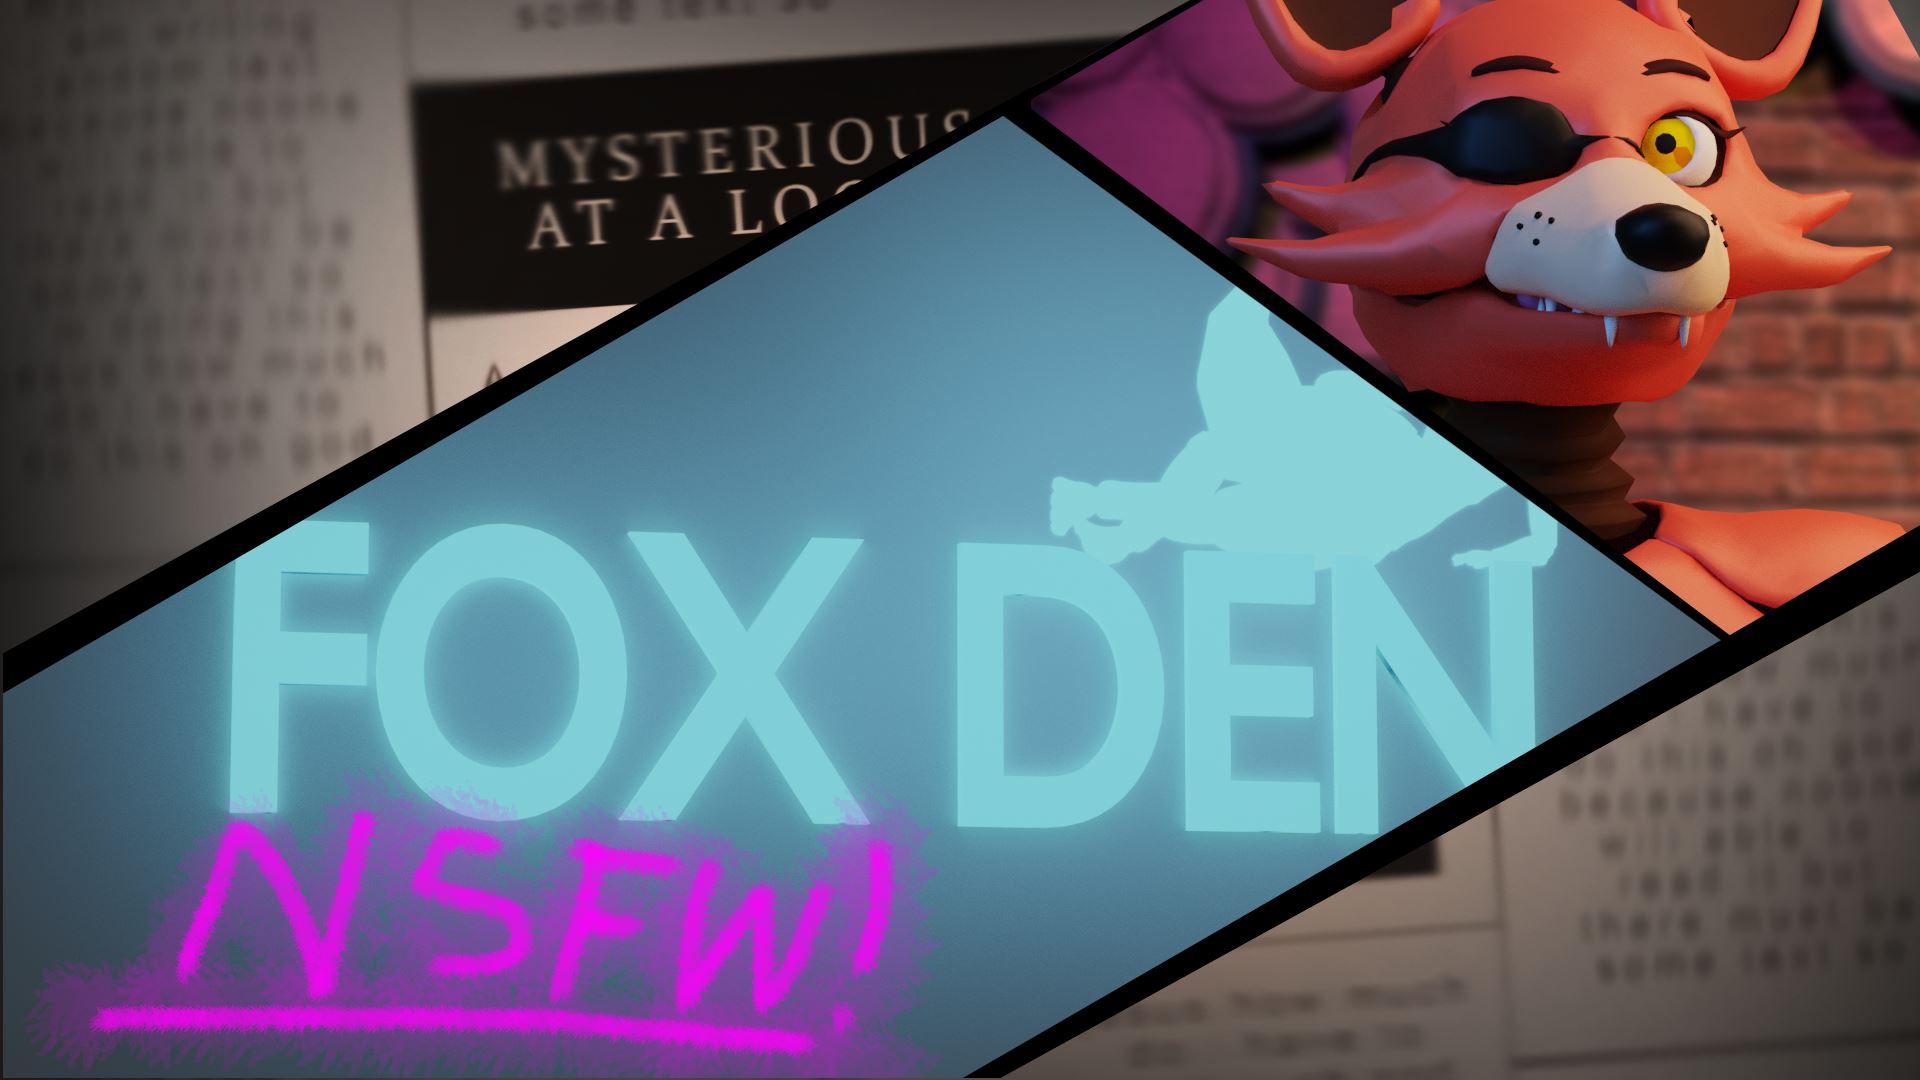 Fox Den Remake Unreal Engine Porn Sex Game v.1.1 Download for Windows